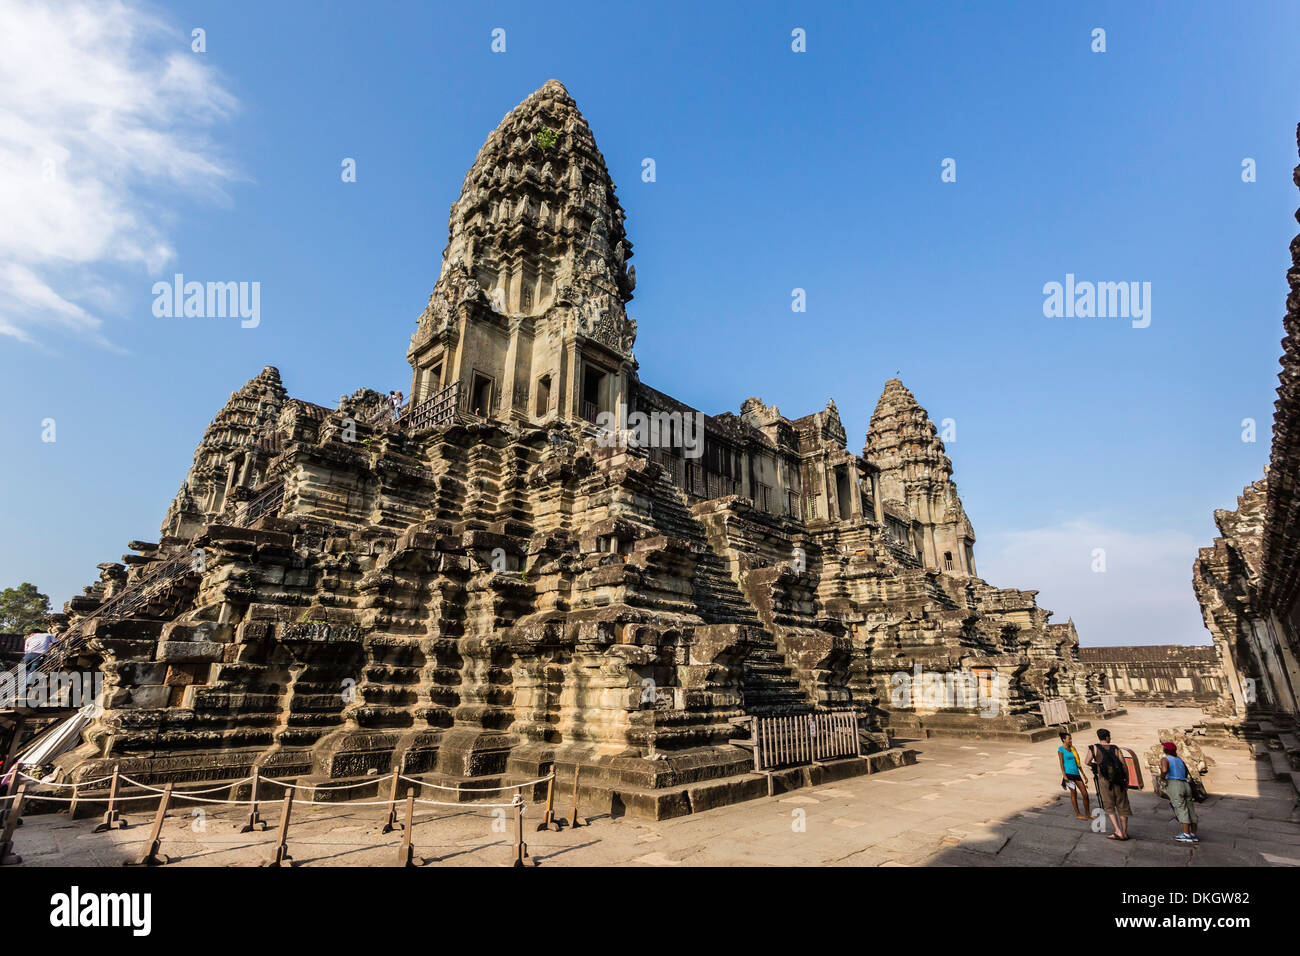 Terrasse surélevée à Angkor Wat, Angkor, Site du patrimoine mondial de l'UNESCO, la Province de Siem Reap, Cambodge, Indochine, Asie du Sud, Asie Banque D'Images